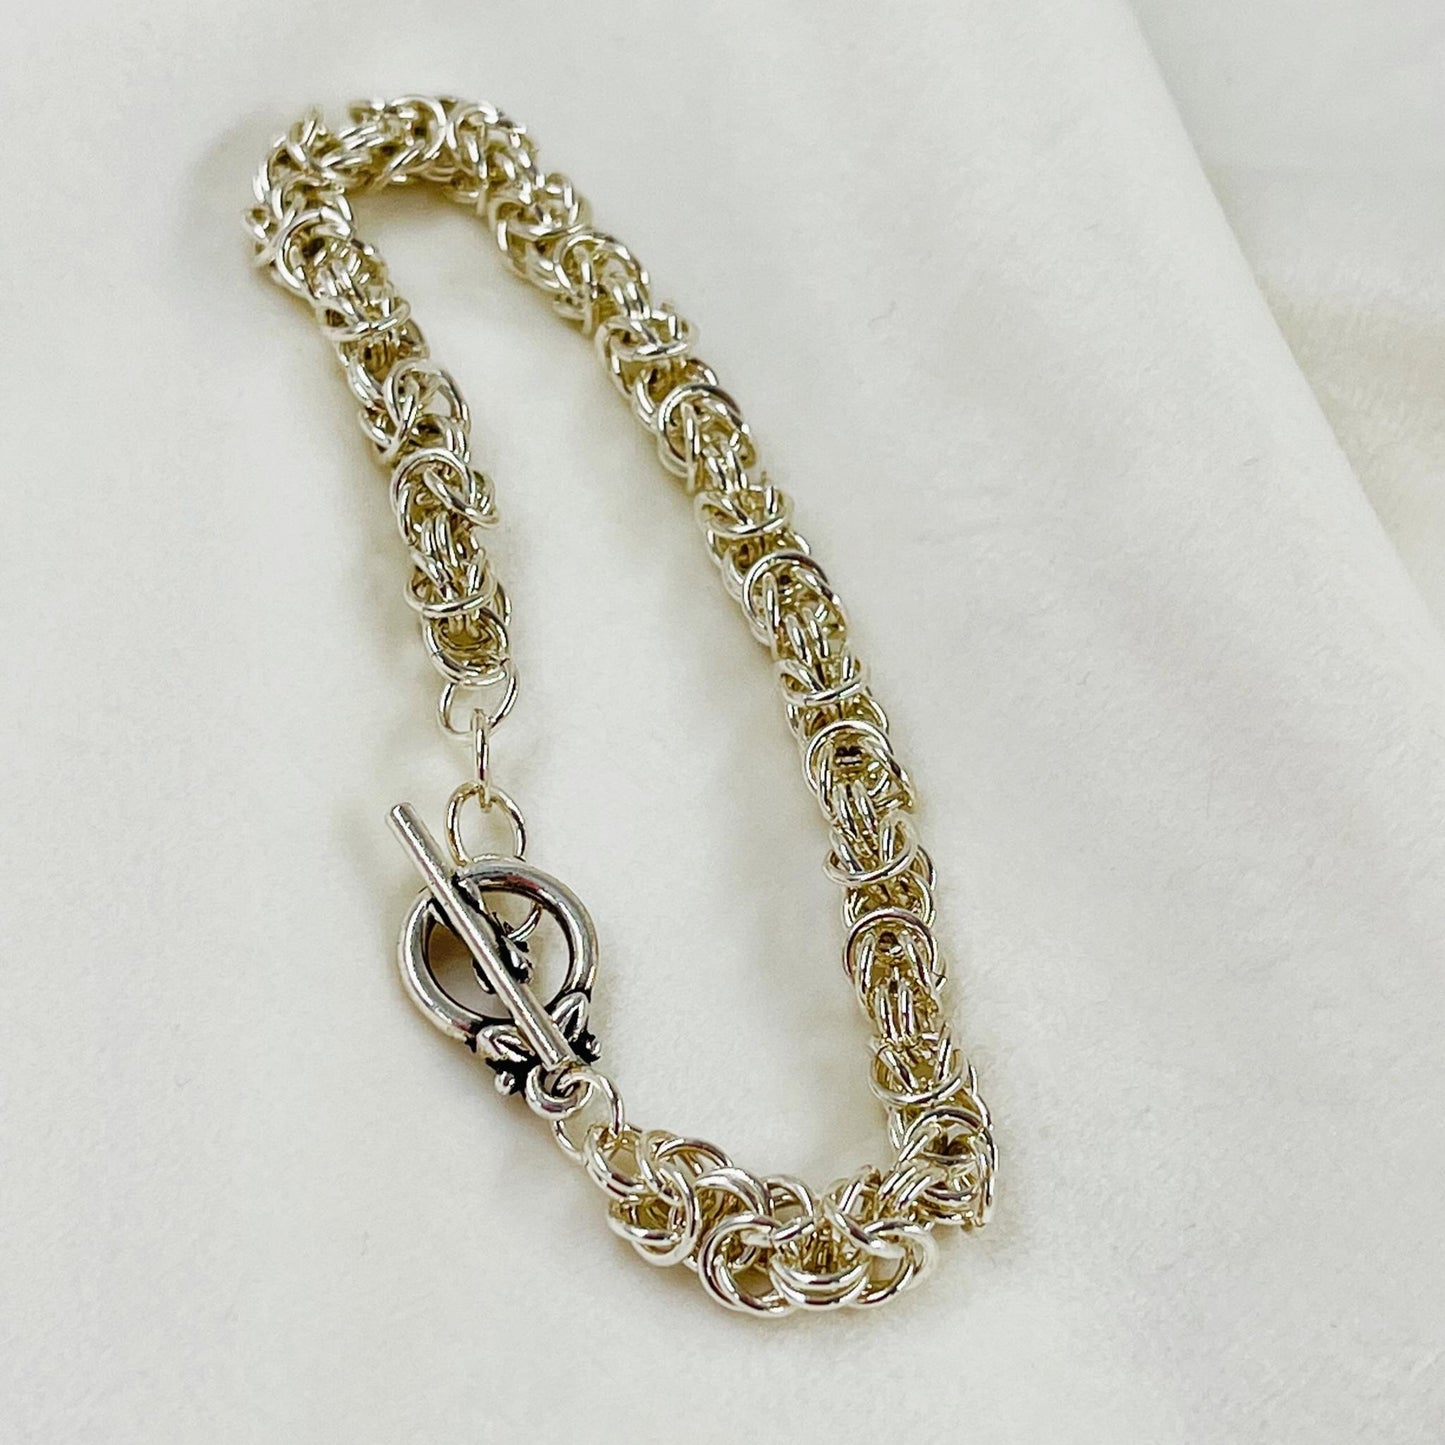 Sterling Silver Bracelet-Byzantine Weave-Chain Maille Bracelet-Carabella By Cheryl